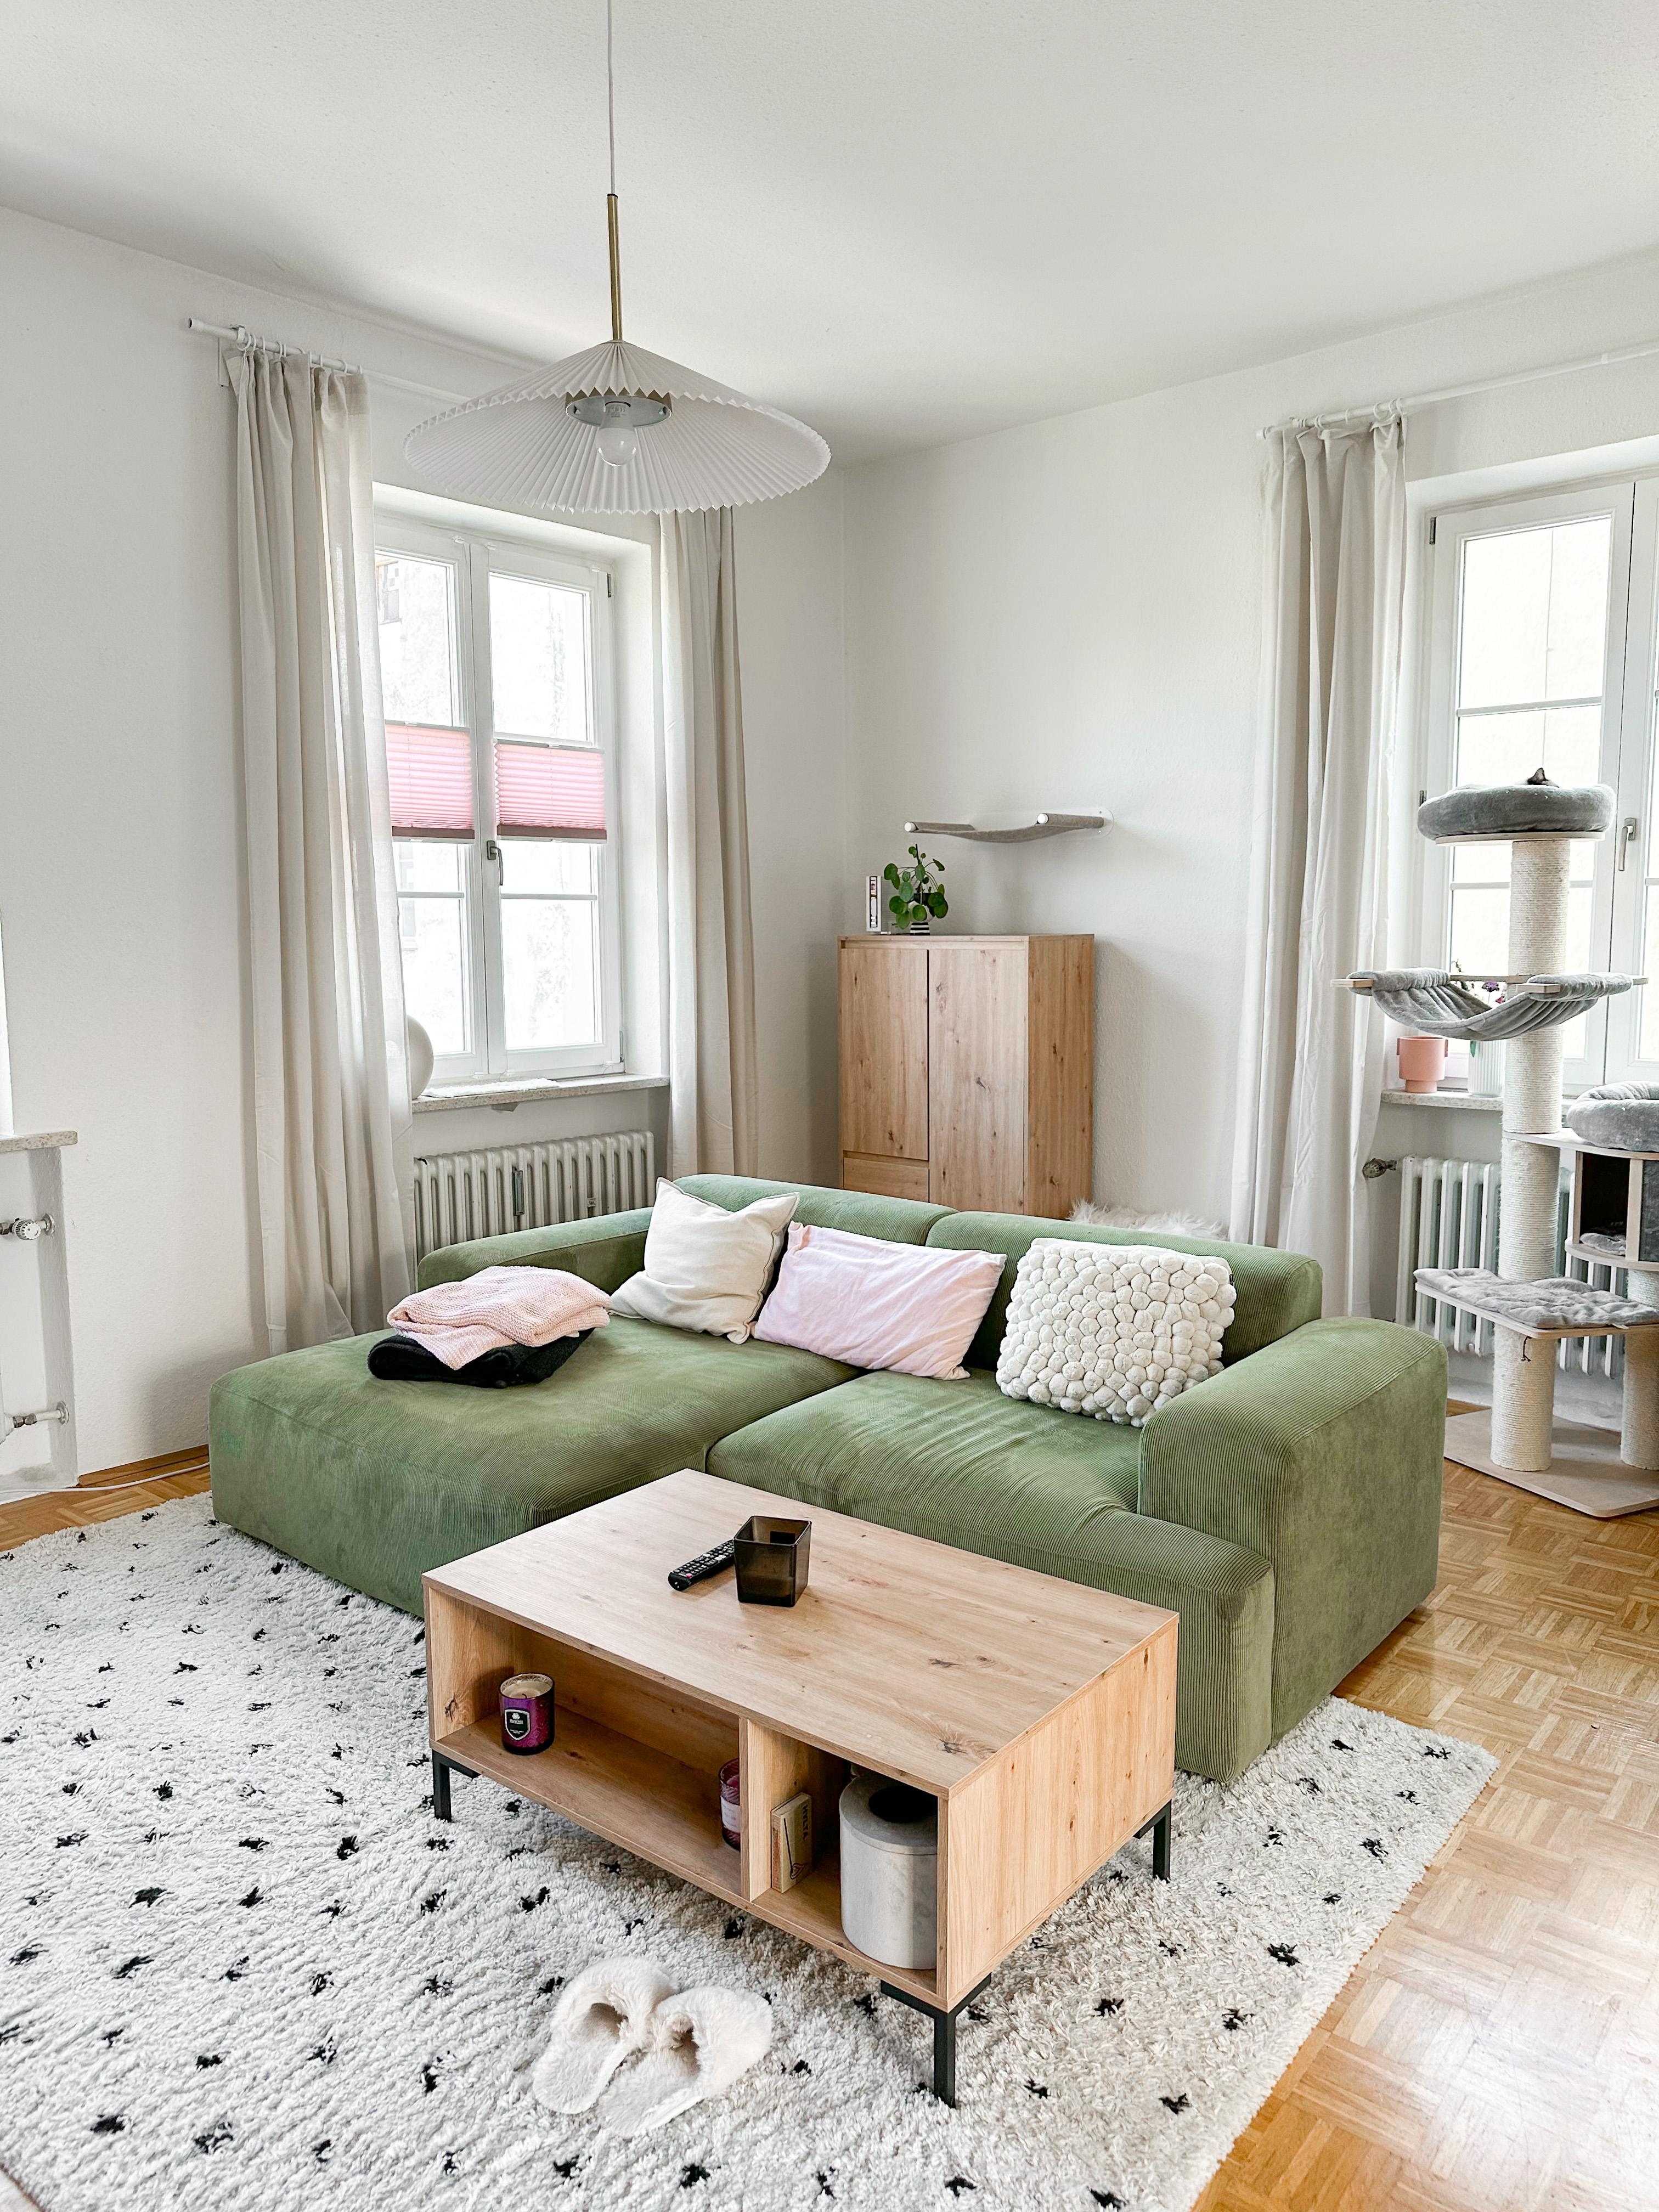 Wohnzimmer Liebe 🥰
#livingroom #grünecouch #couchliebe #skandihome #altbau #wohnzimmer #scandihome #westwing